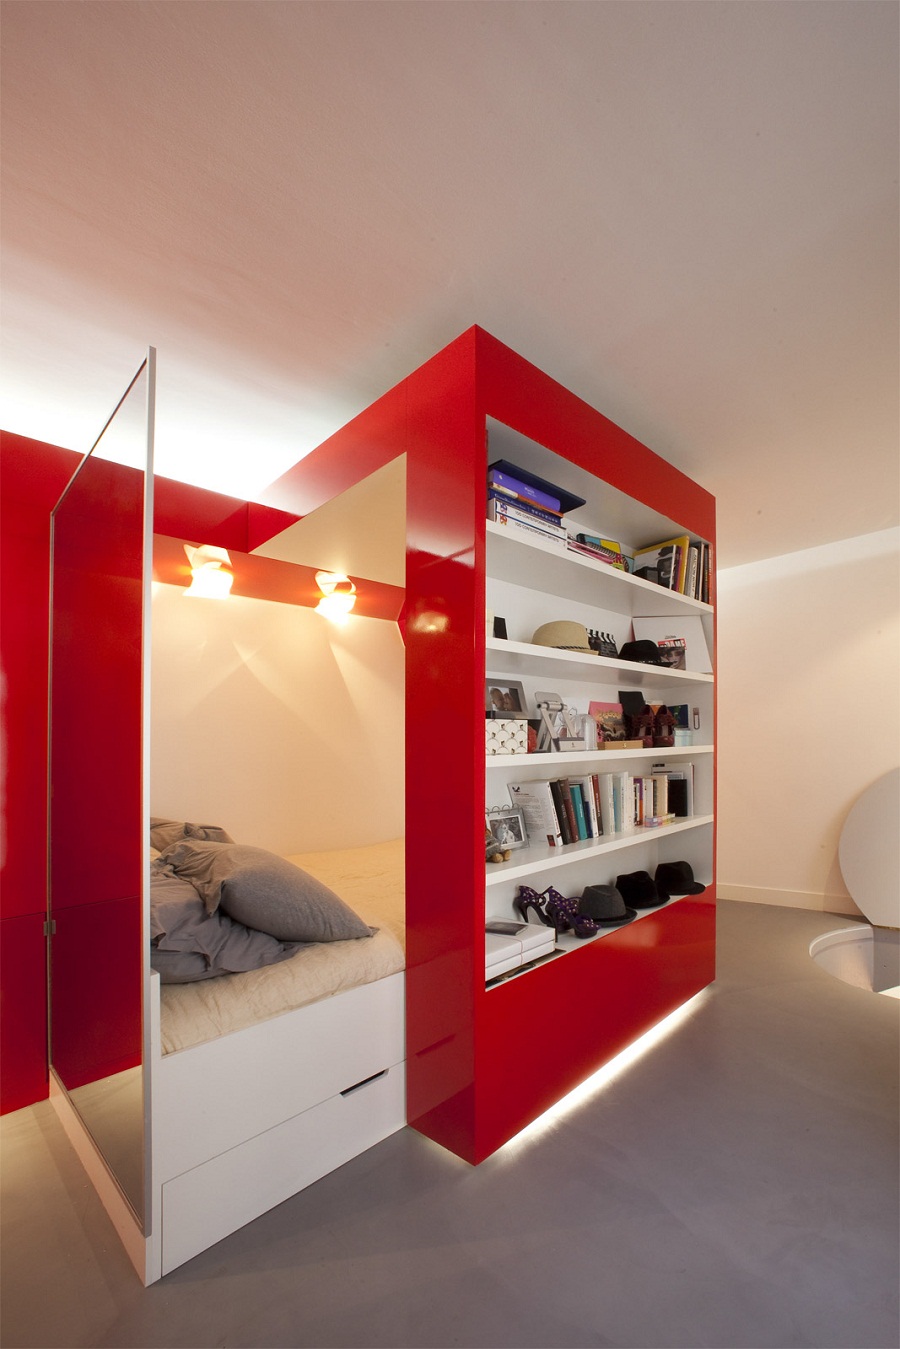  дизайн маленькой комнаты » Современный дизайн на Vip-1gl